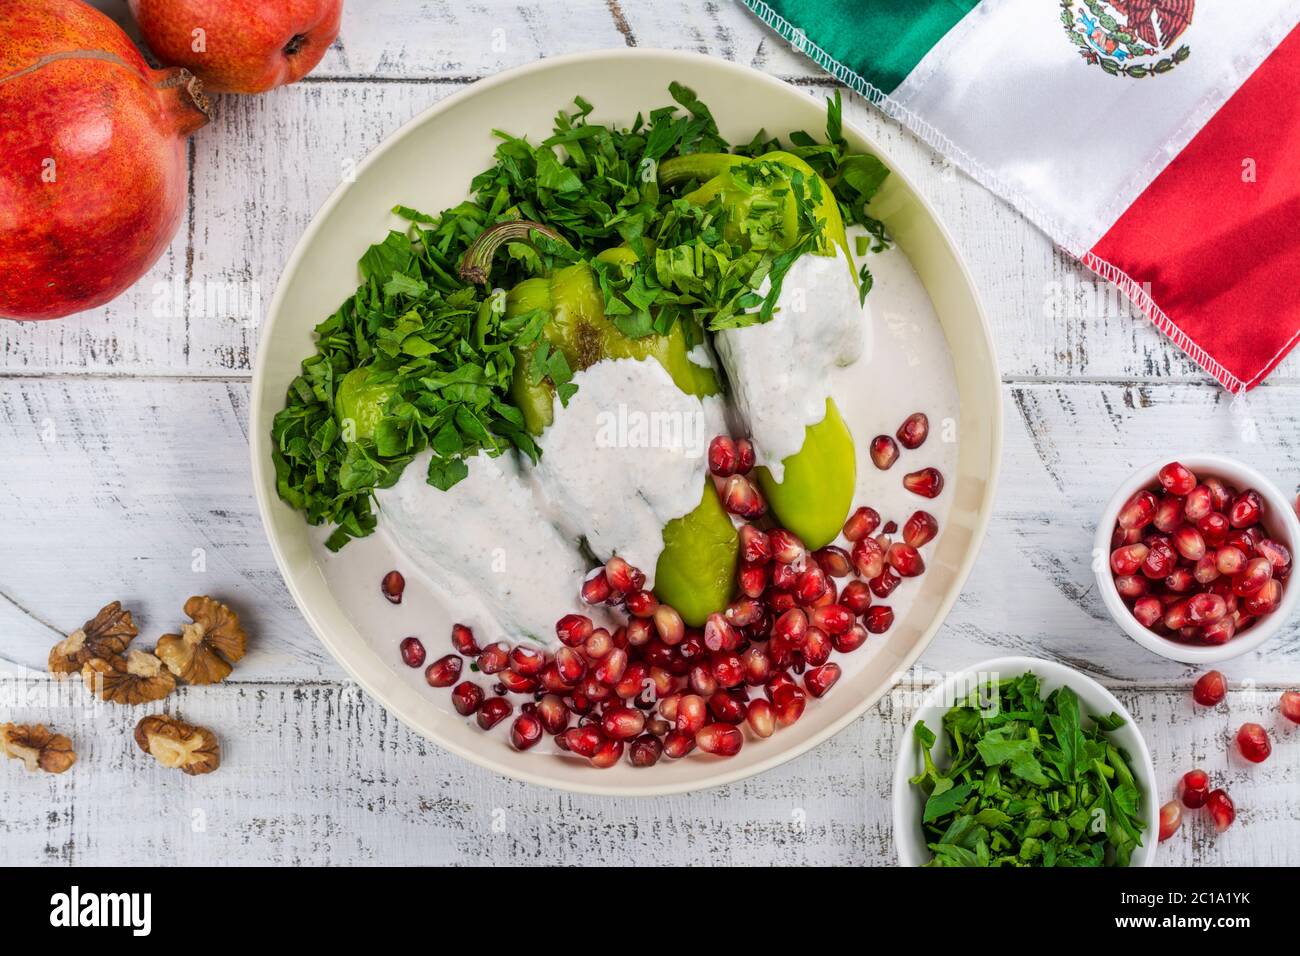 Chiles en nogada, mexican food Stock Photo